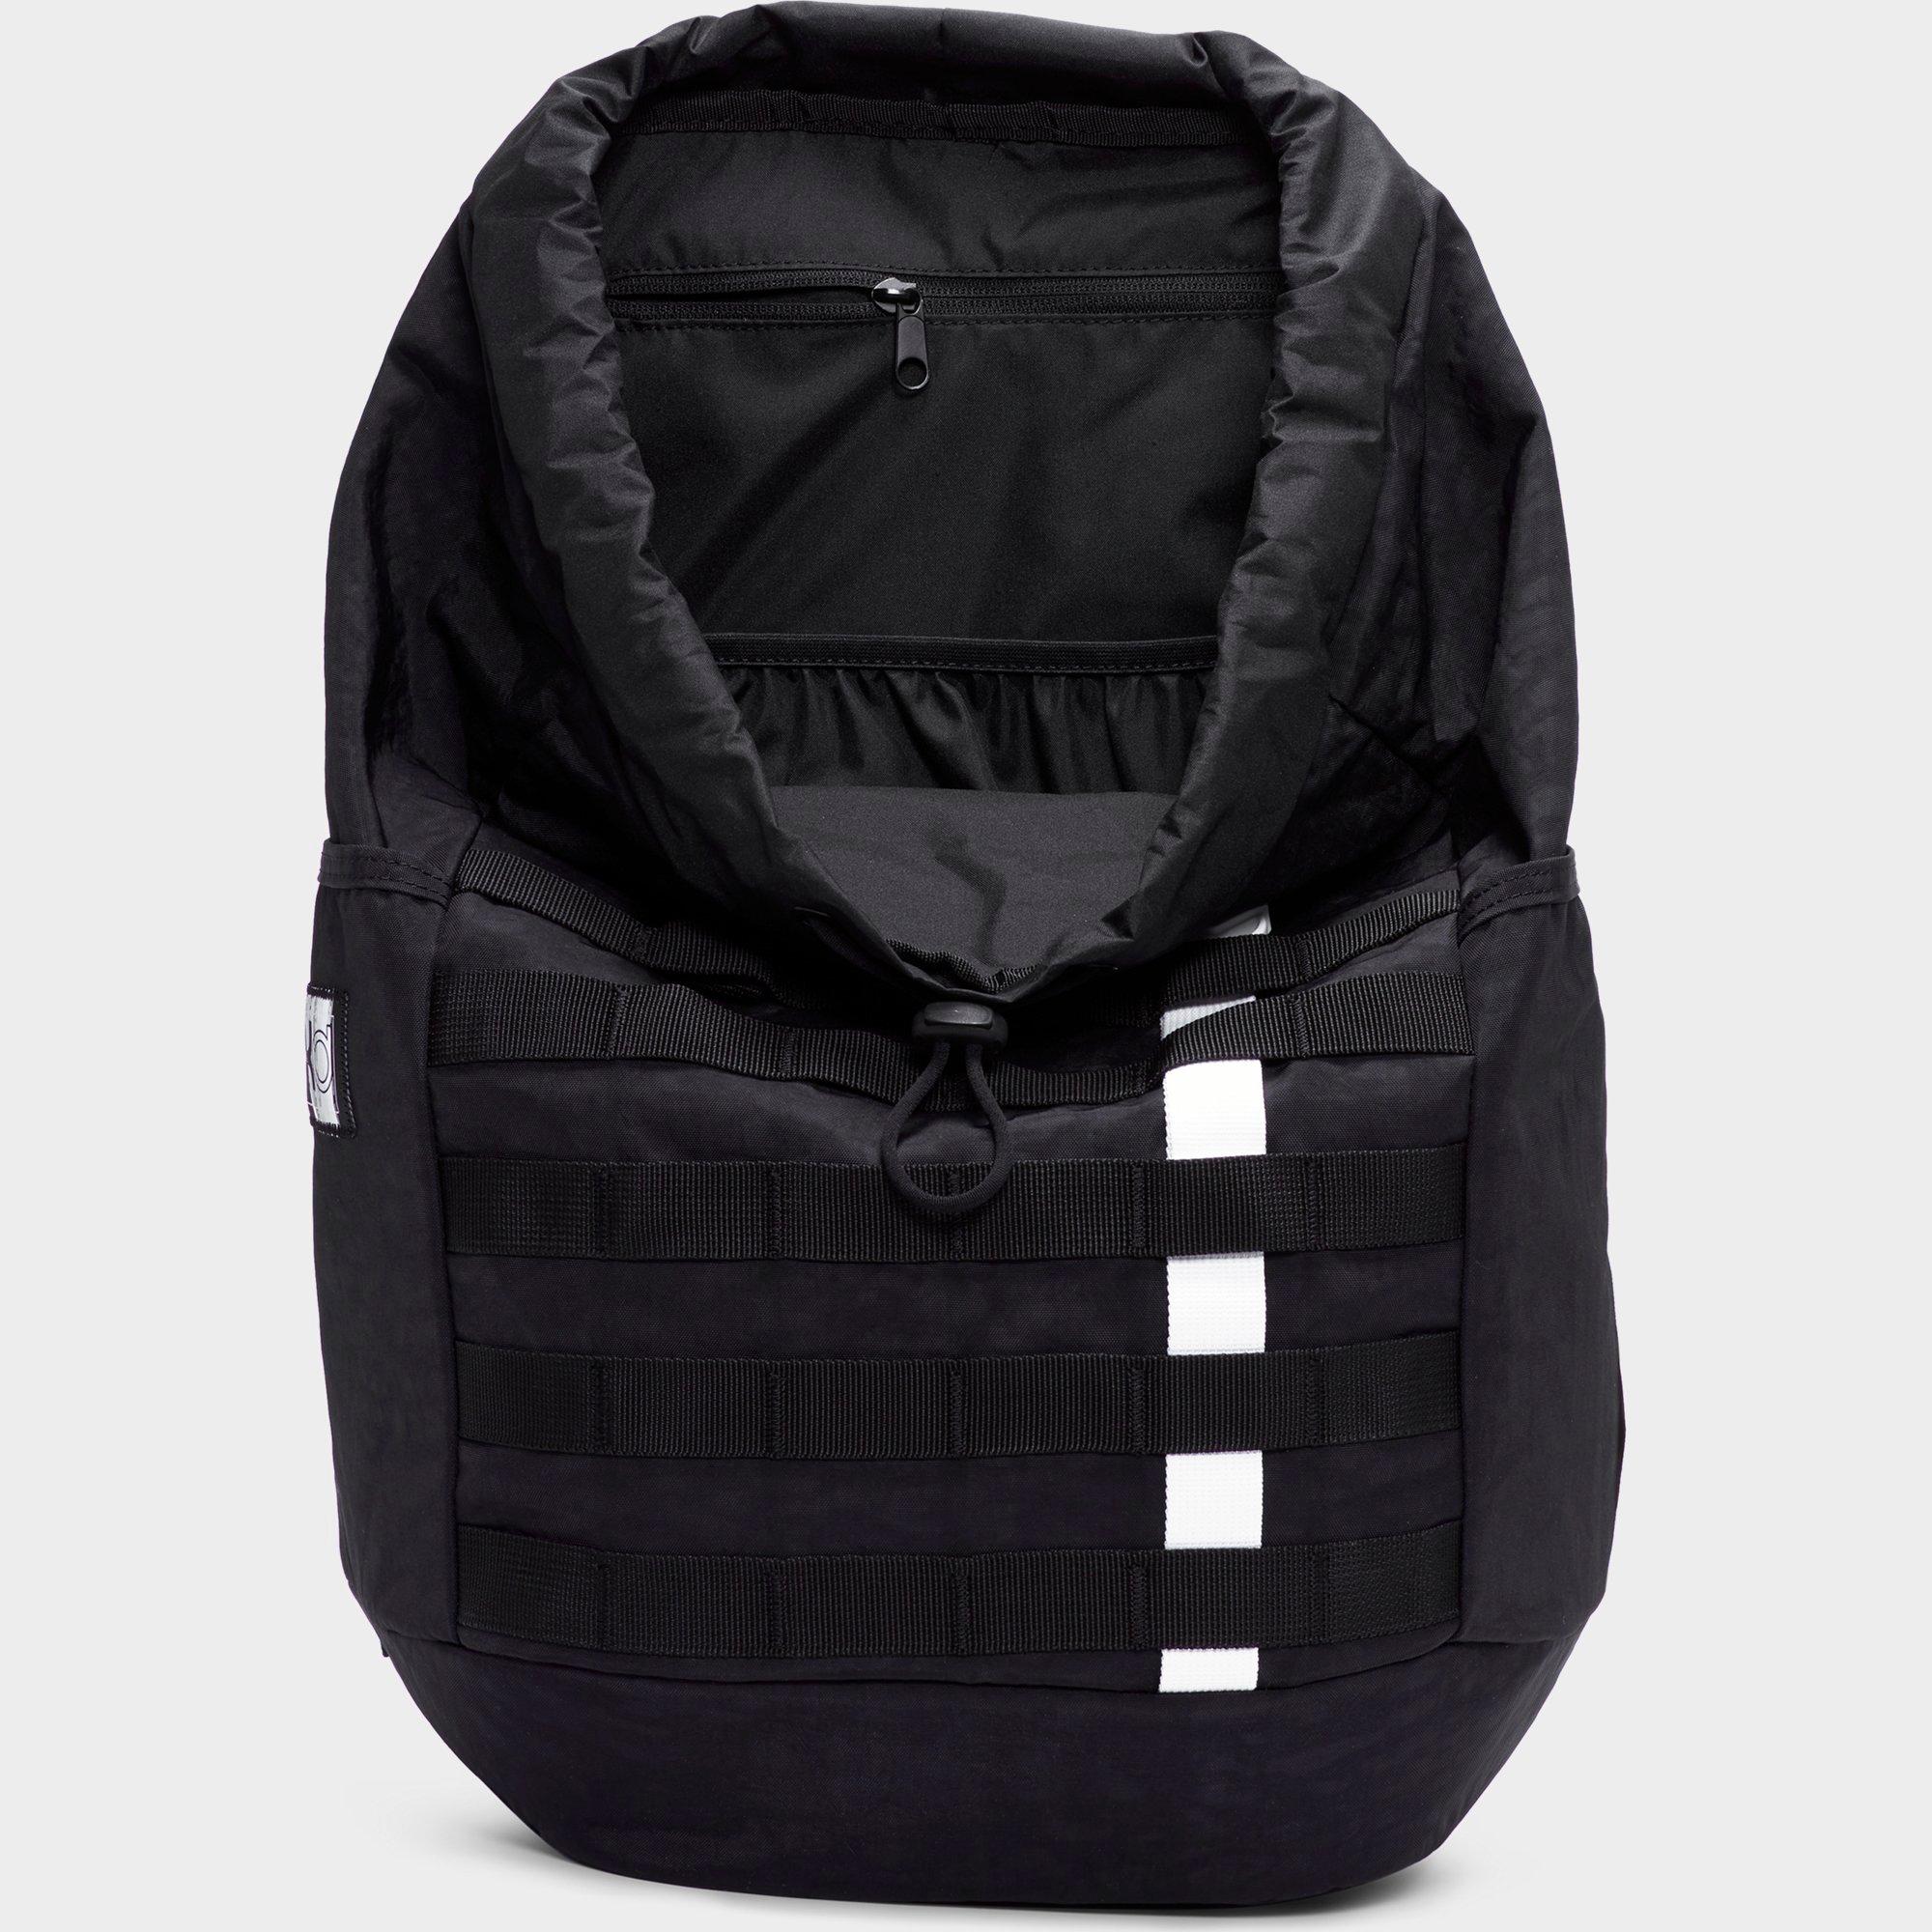 black kd backpack